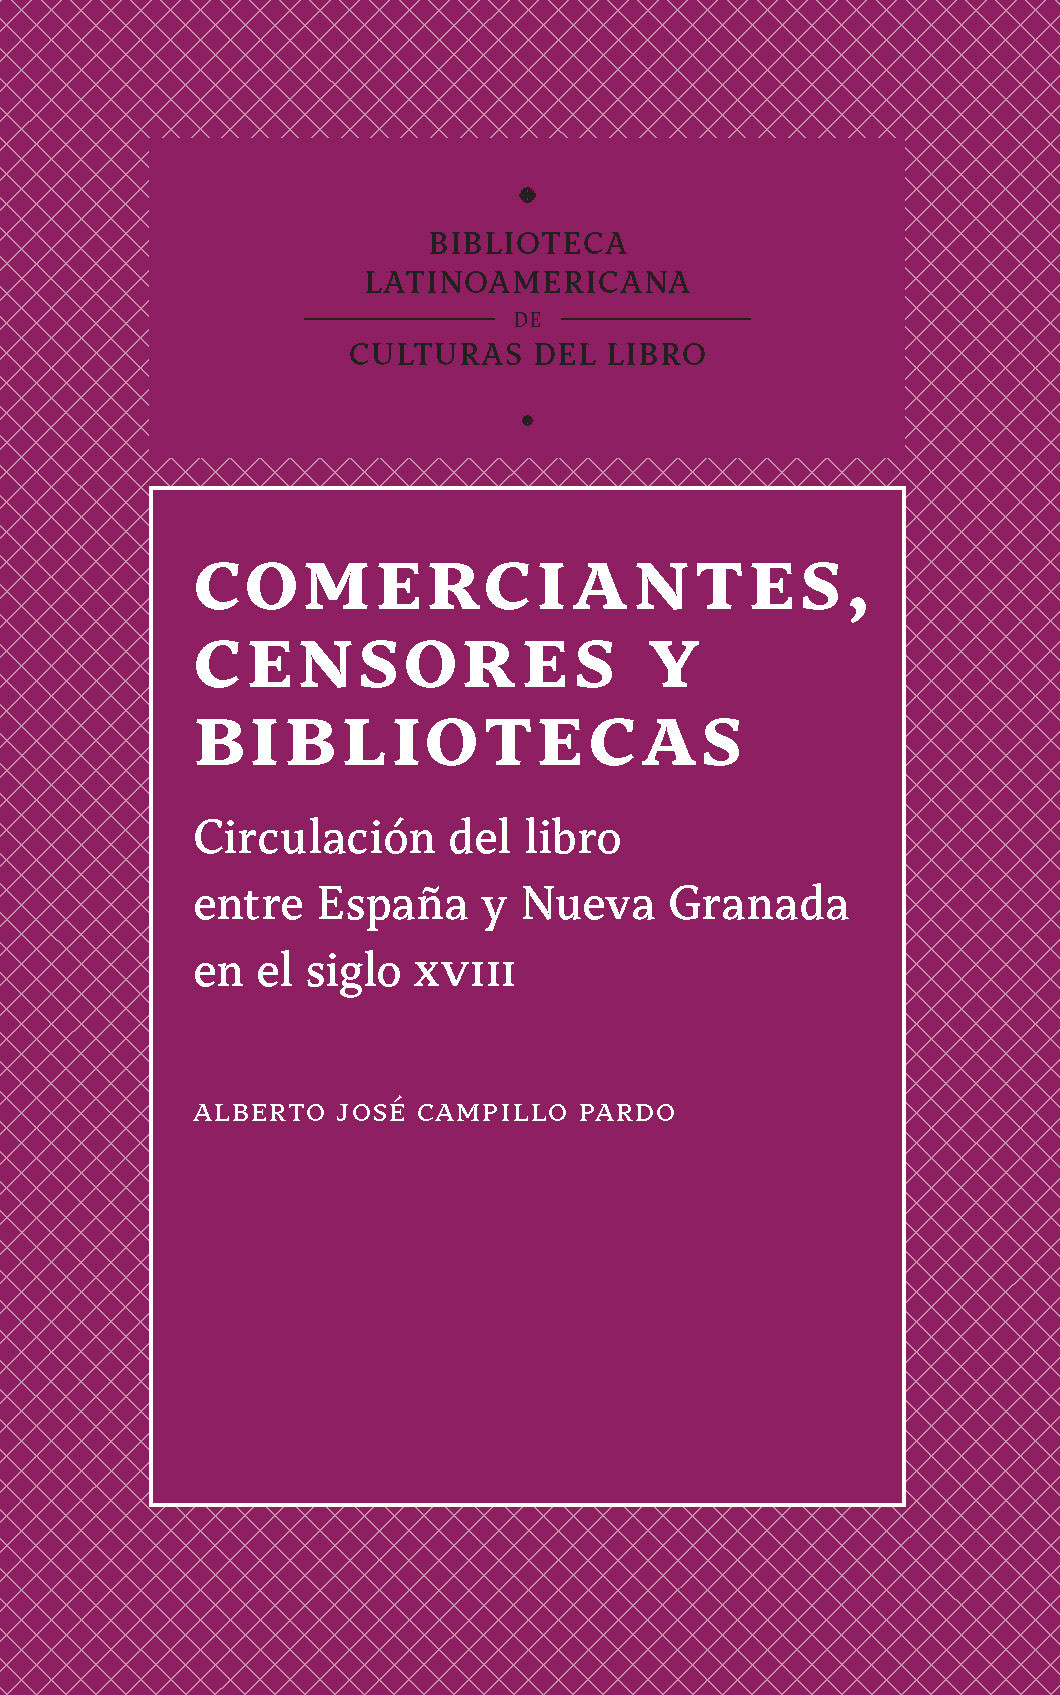 Imagen de portada del libro Comerciantes, censores y bibliotecas